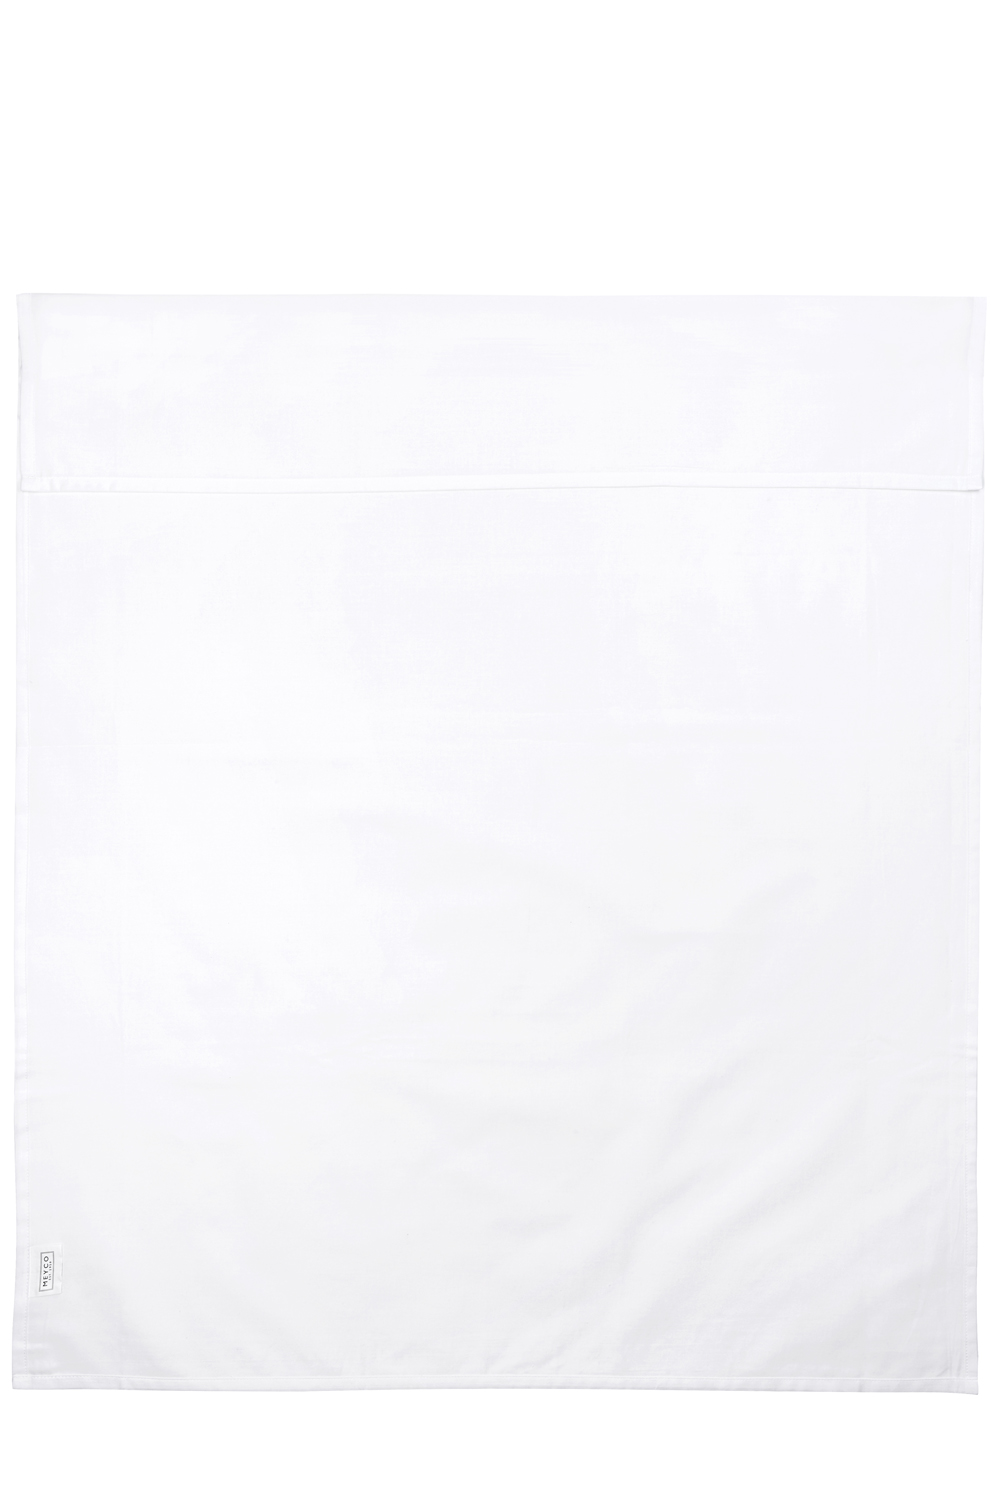 Wieglaken Uni - white - 75x100cm